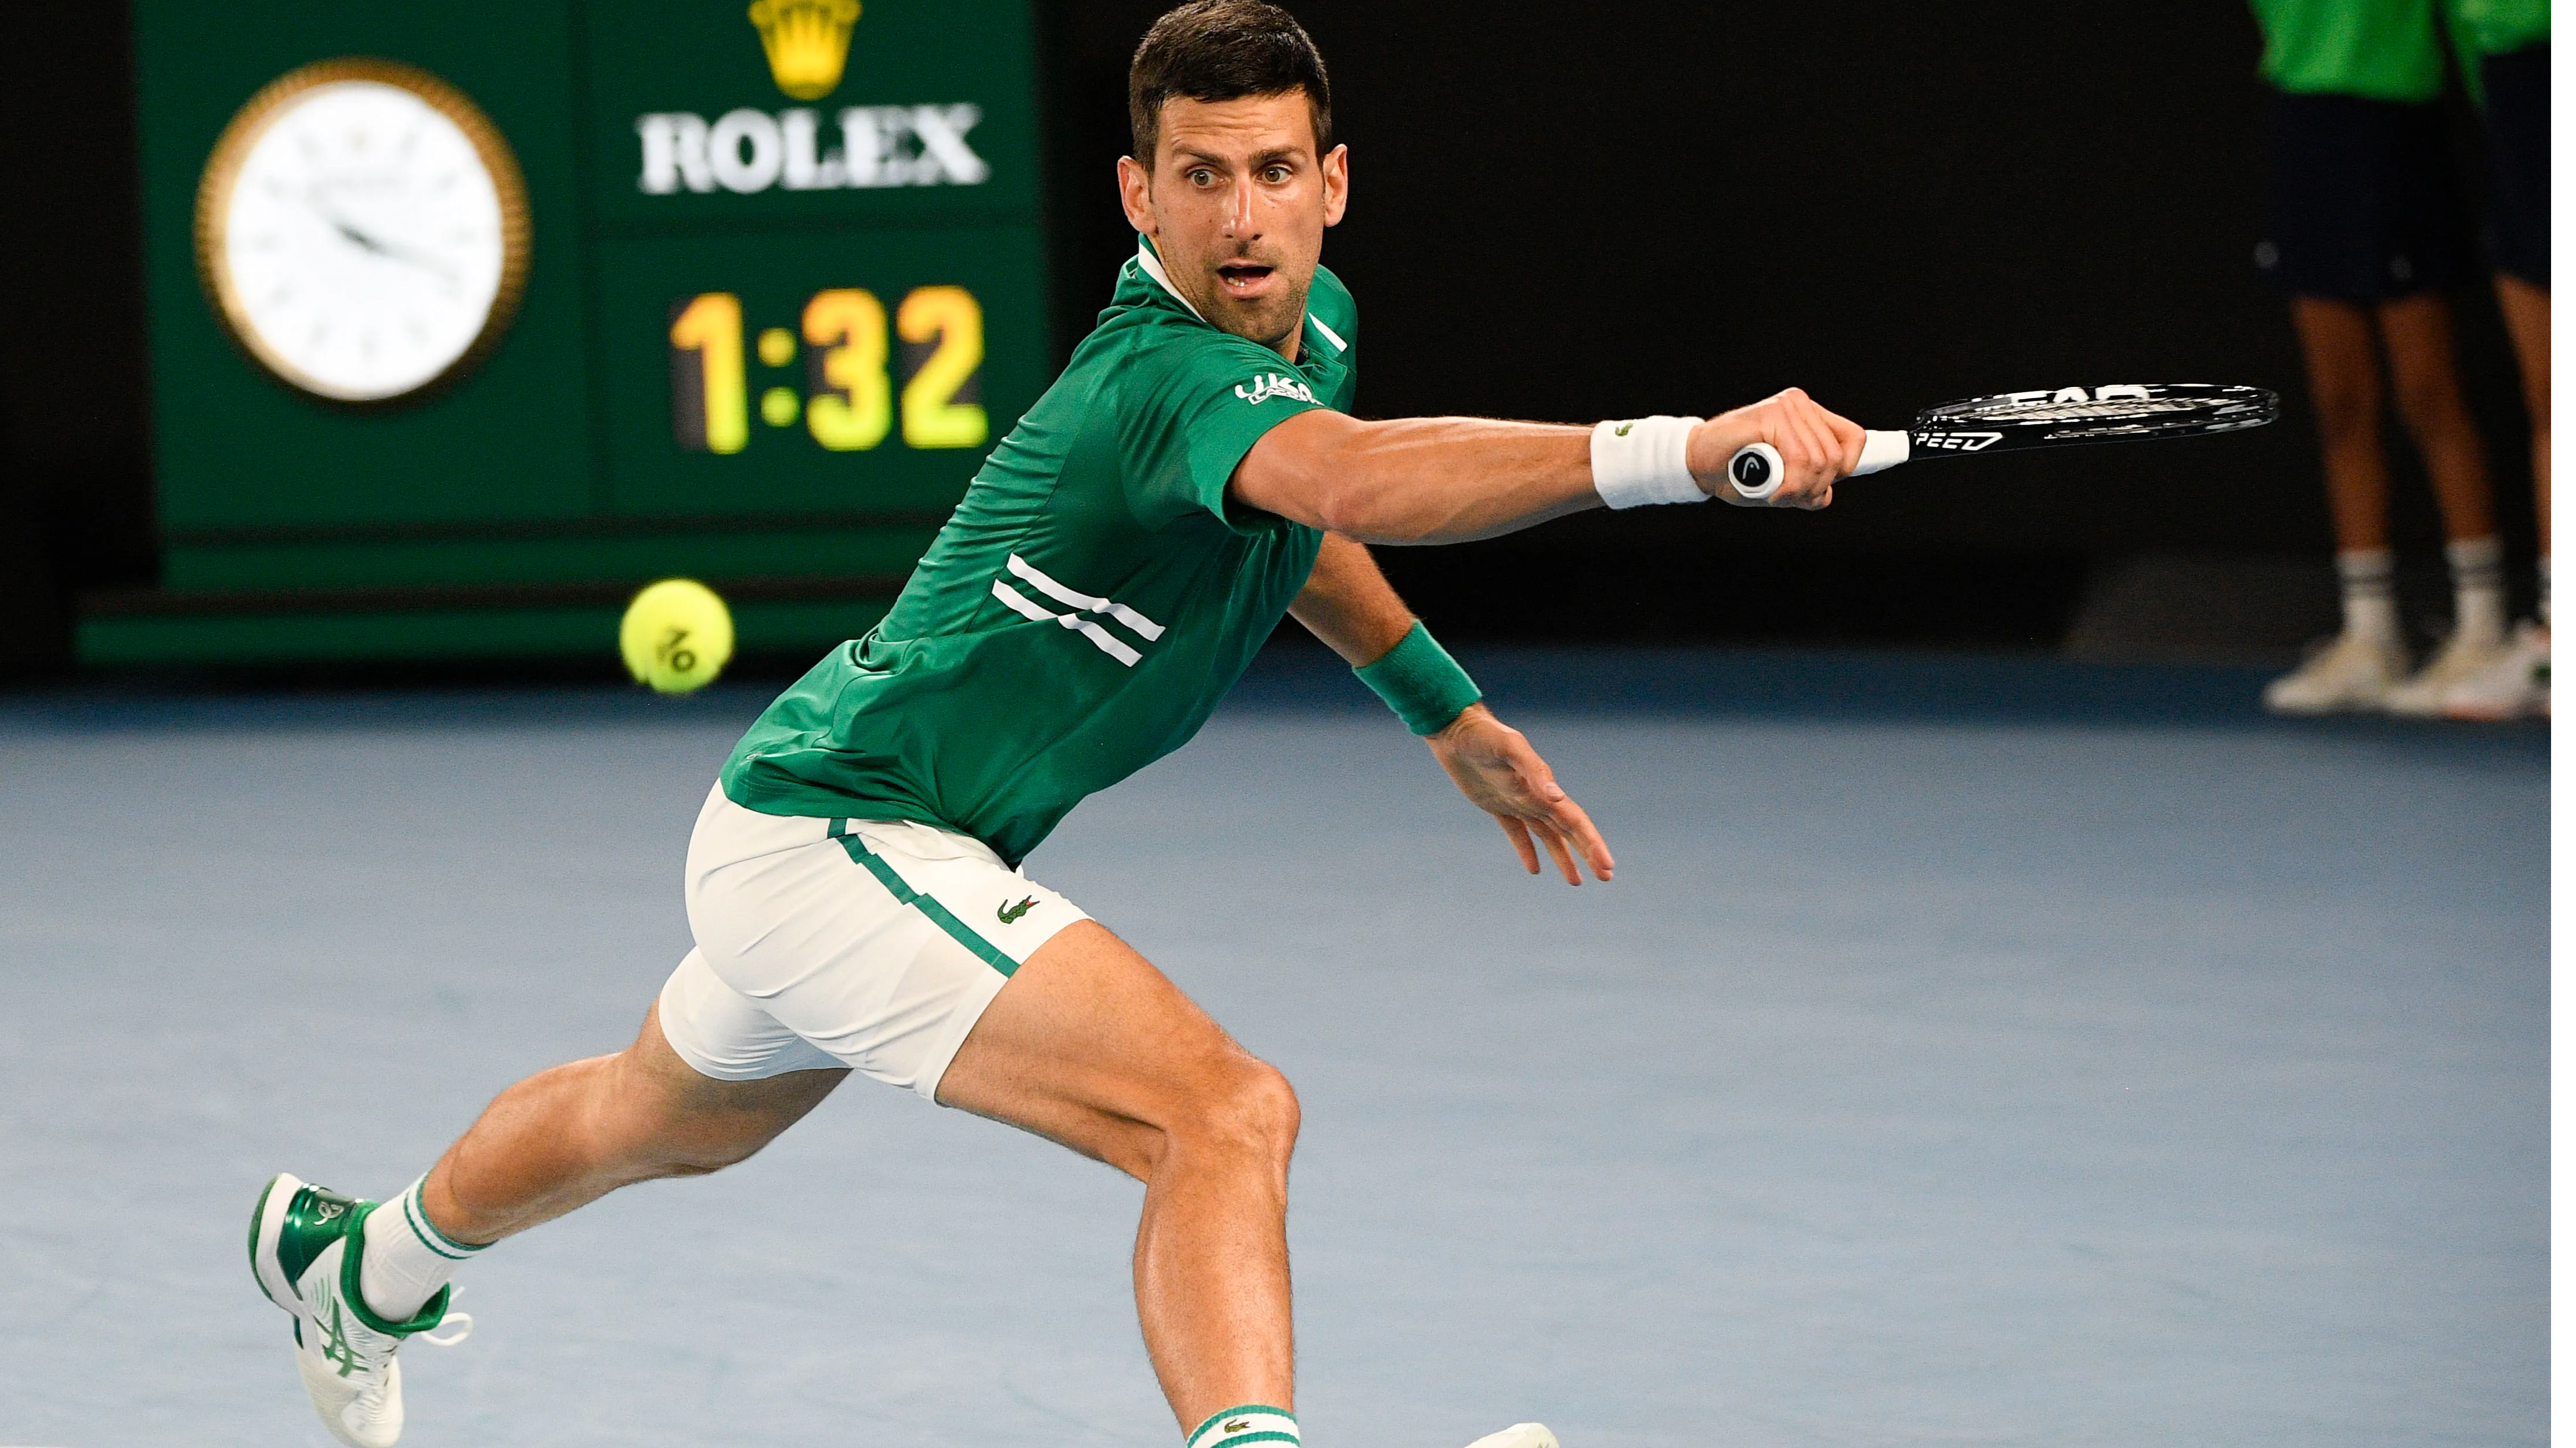 Novak Djokovic sweeps into the Italian Open quarterfinals